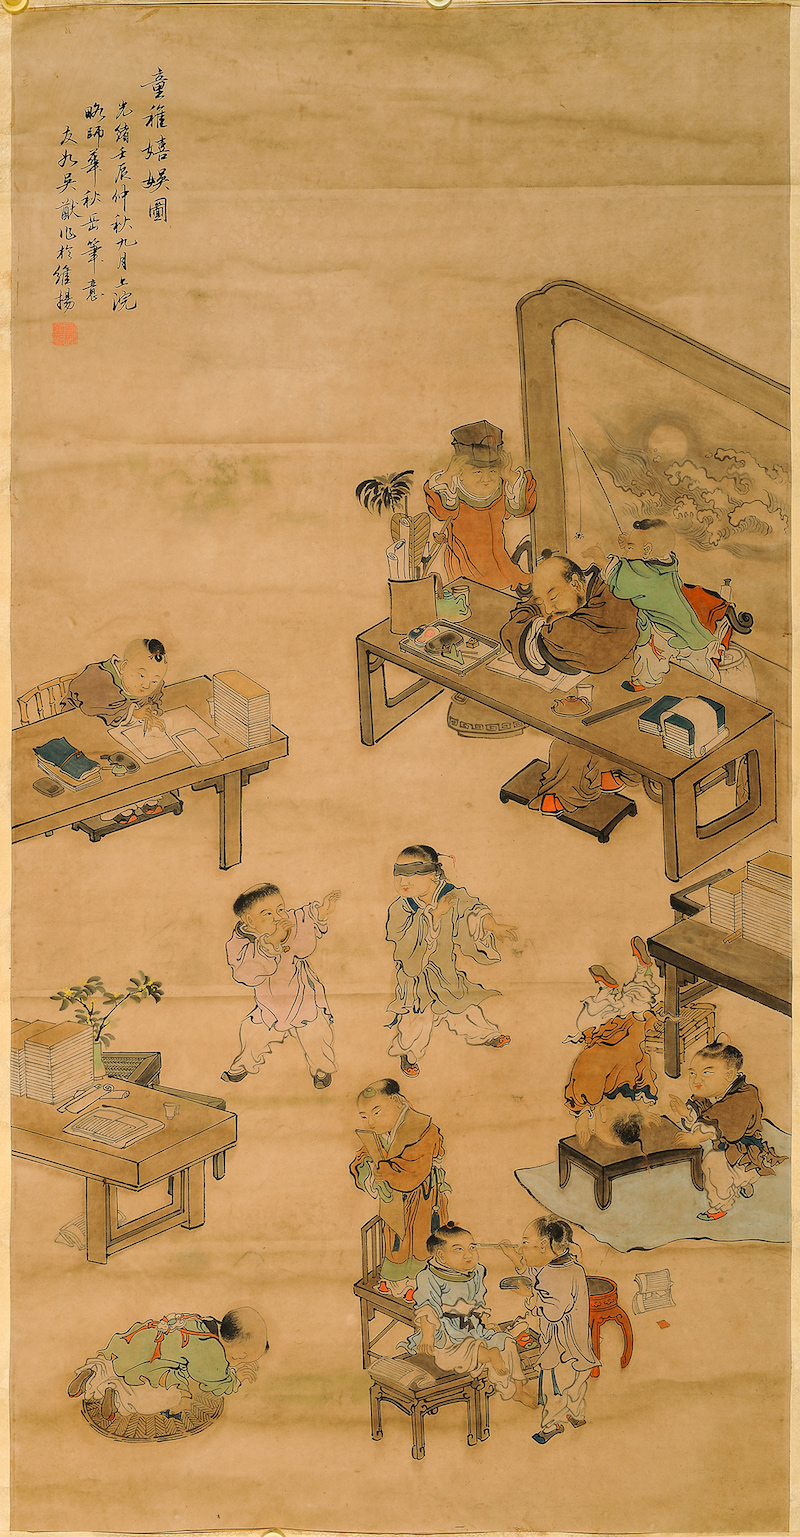 《童稚嬉娱图》纸本设色，133x68cm，清末民初，大观文化馆藏